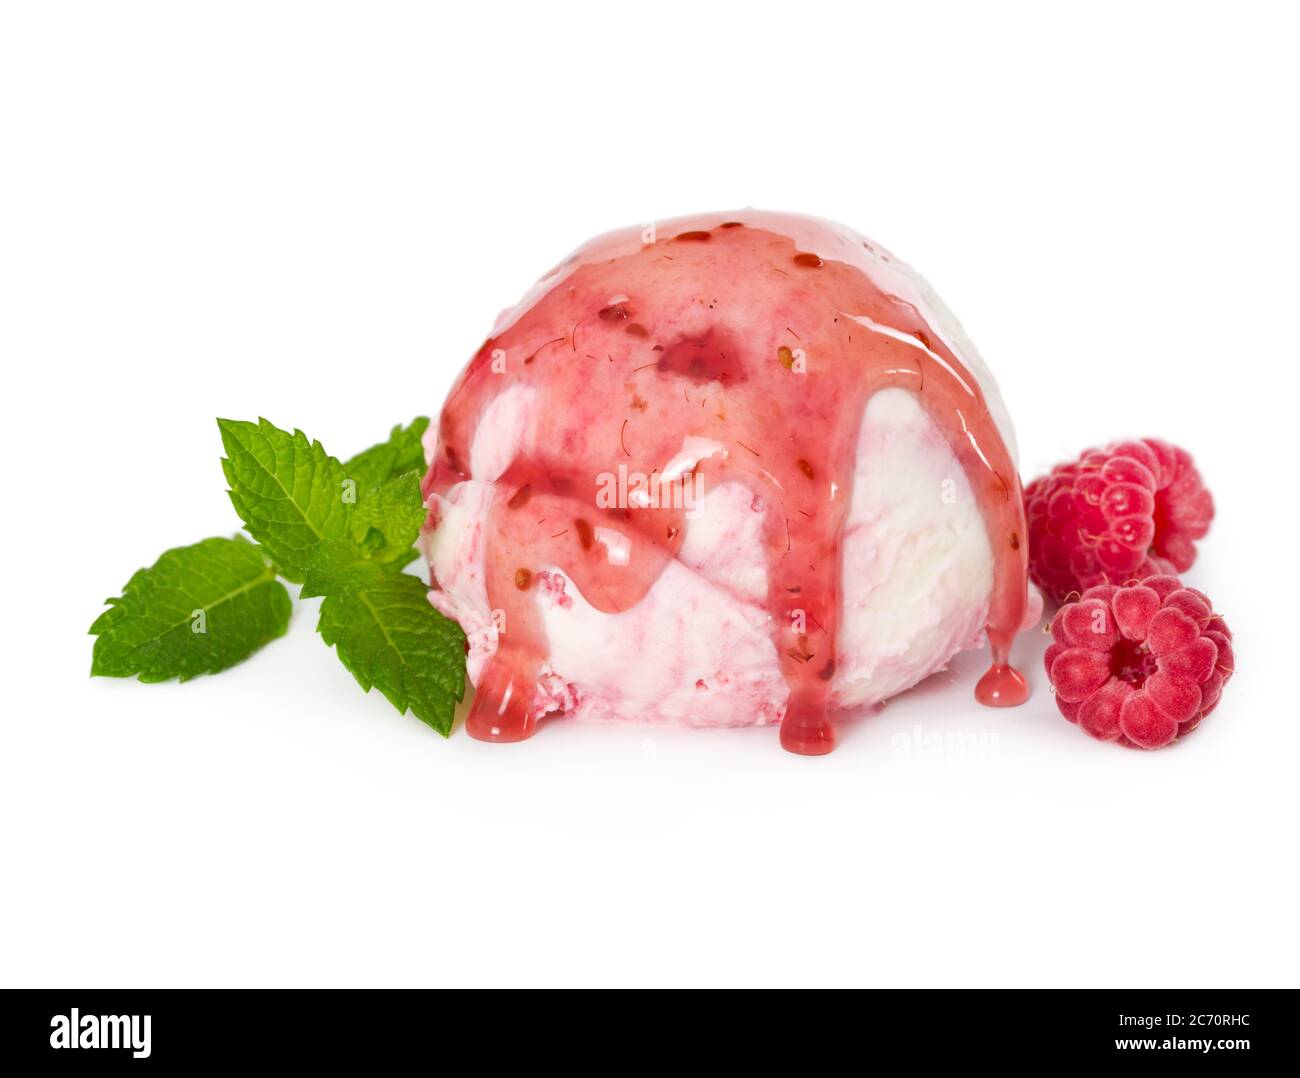 Cuillère de crème glacée à la framboise avec framboises fraîches, menthe et sirop de framboise isolés sur fond blanc Banque D'Images